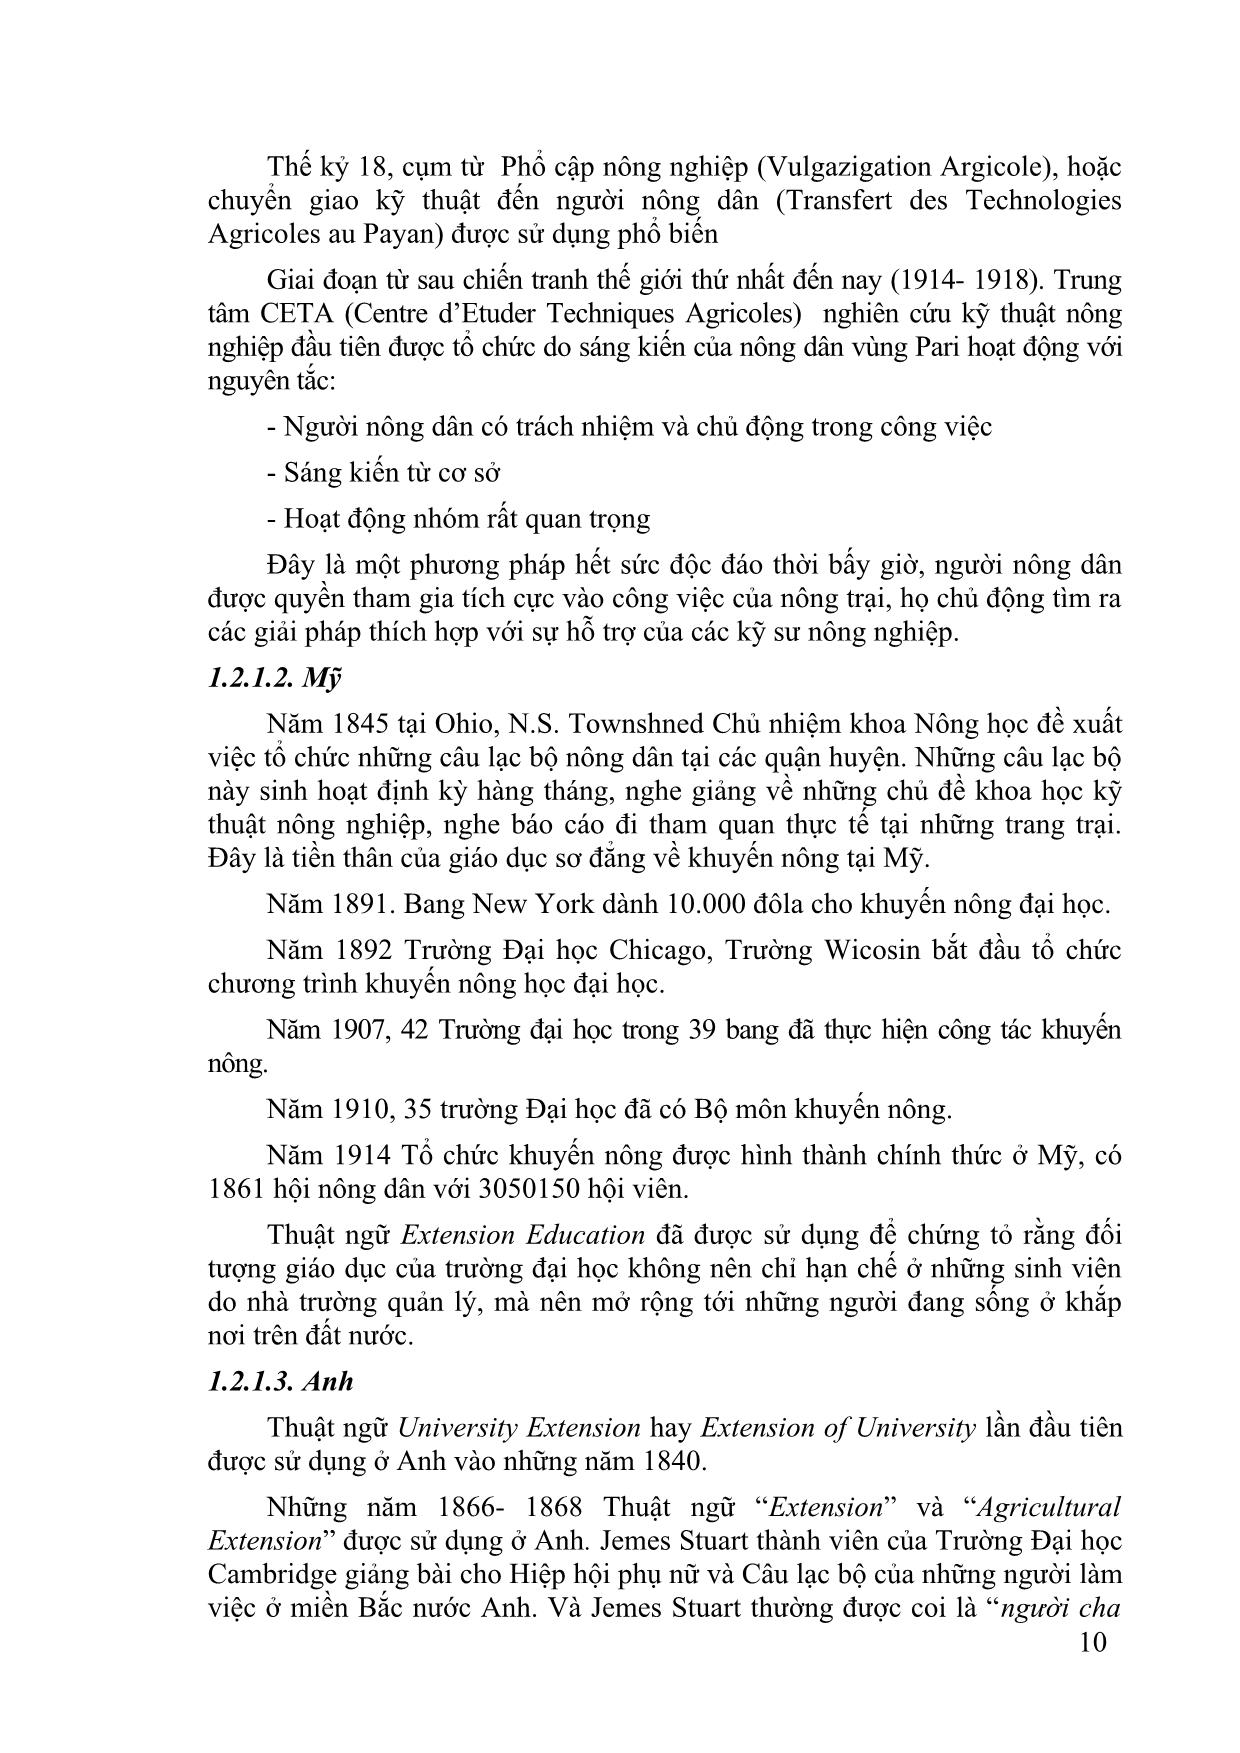 Bài giảng Khuyến nông - Phạm Thạch trang 10